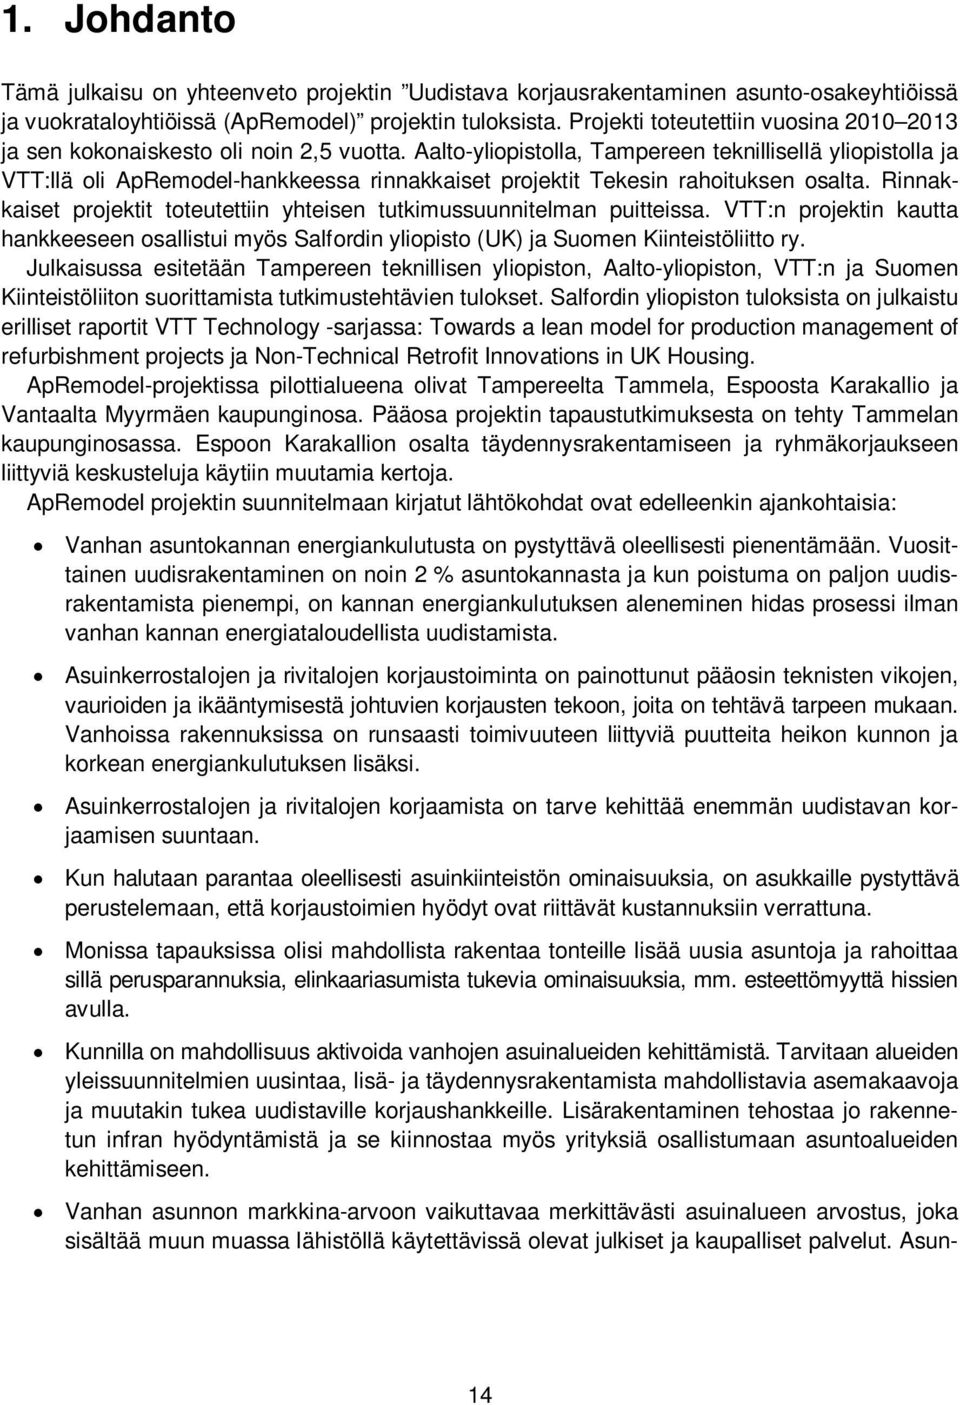 Aalto-yliopistolla, Tampereen teknillisellä yliopistolla ja VTT:llä oli ApRemodel-hankkeessa rinnakkaiset projektit Tekesin rahoituksen osalta.